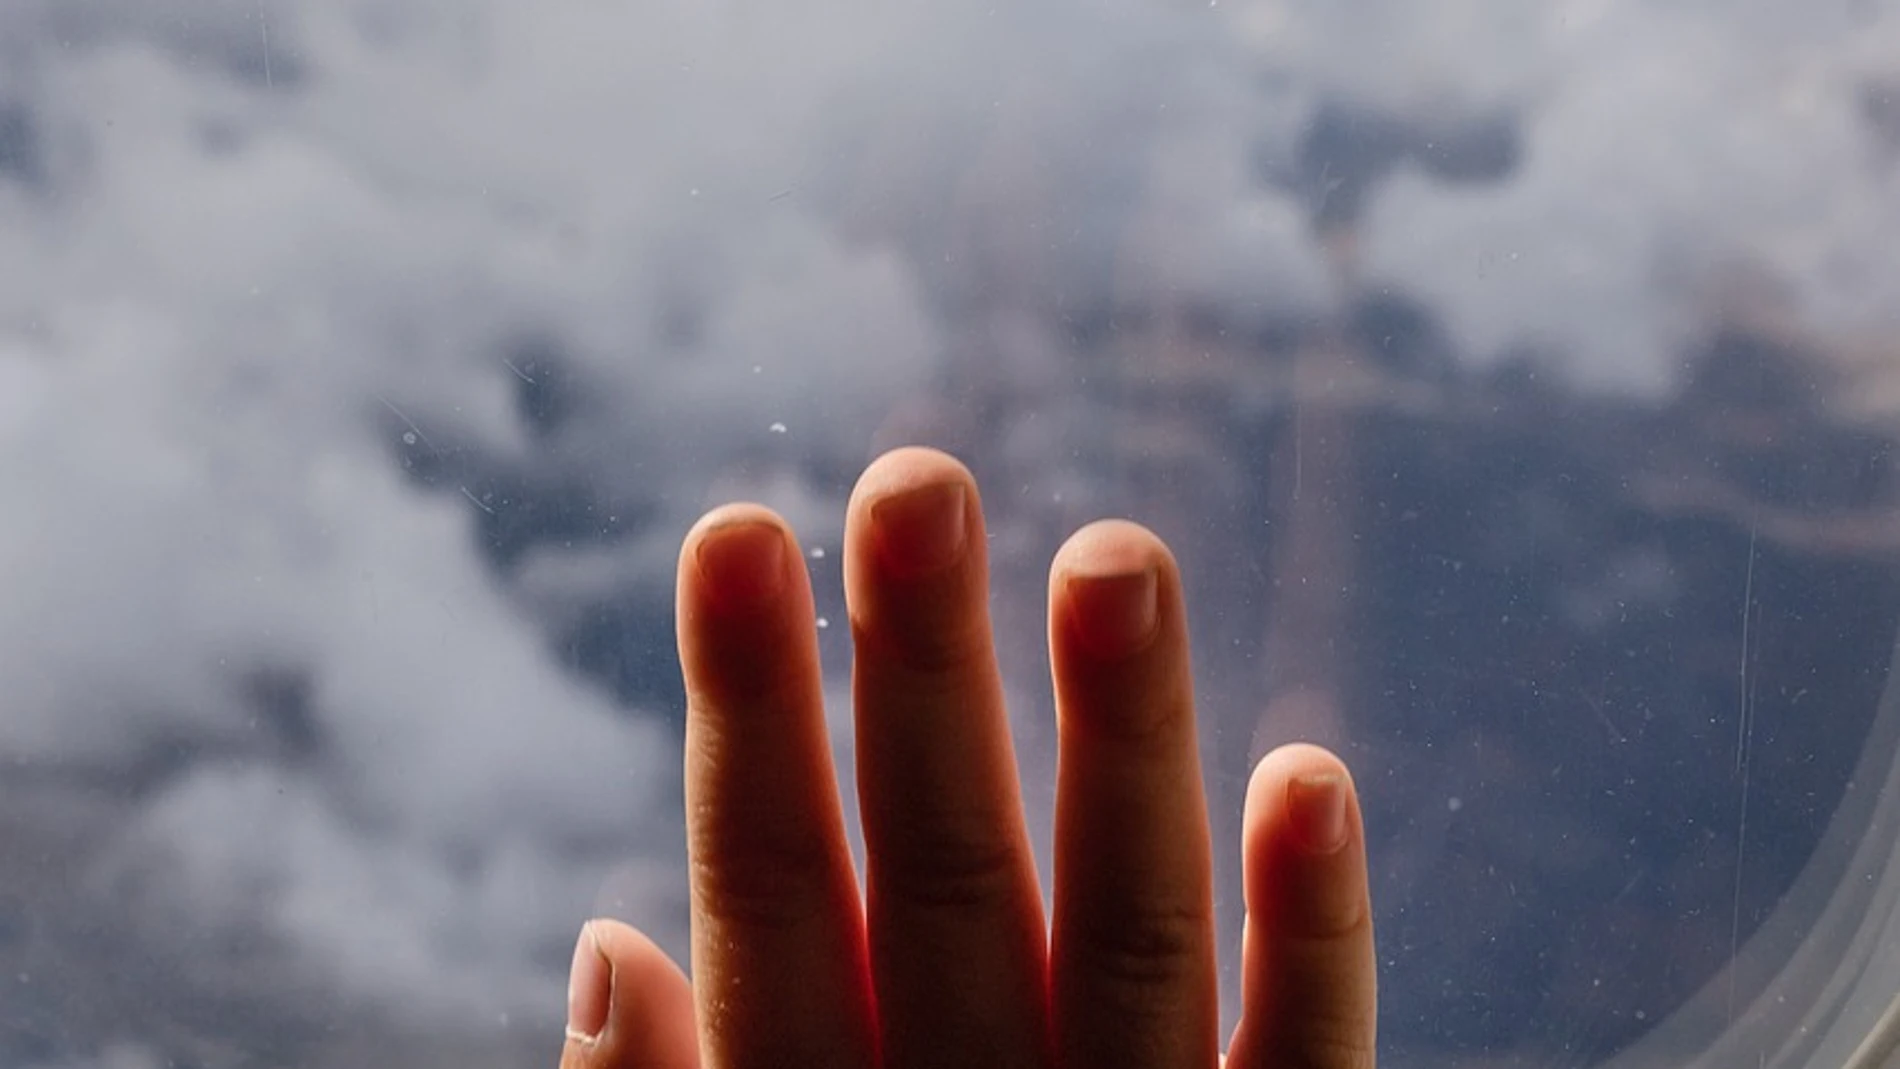 Imagen de la mano de un niño en la ventana de un avión